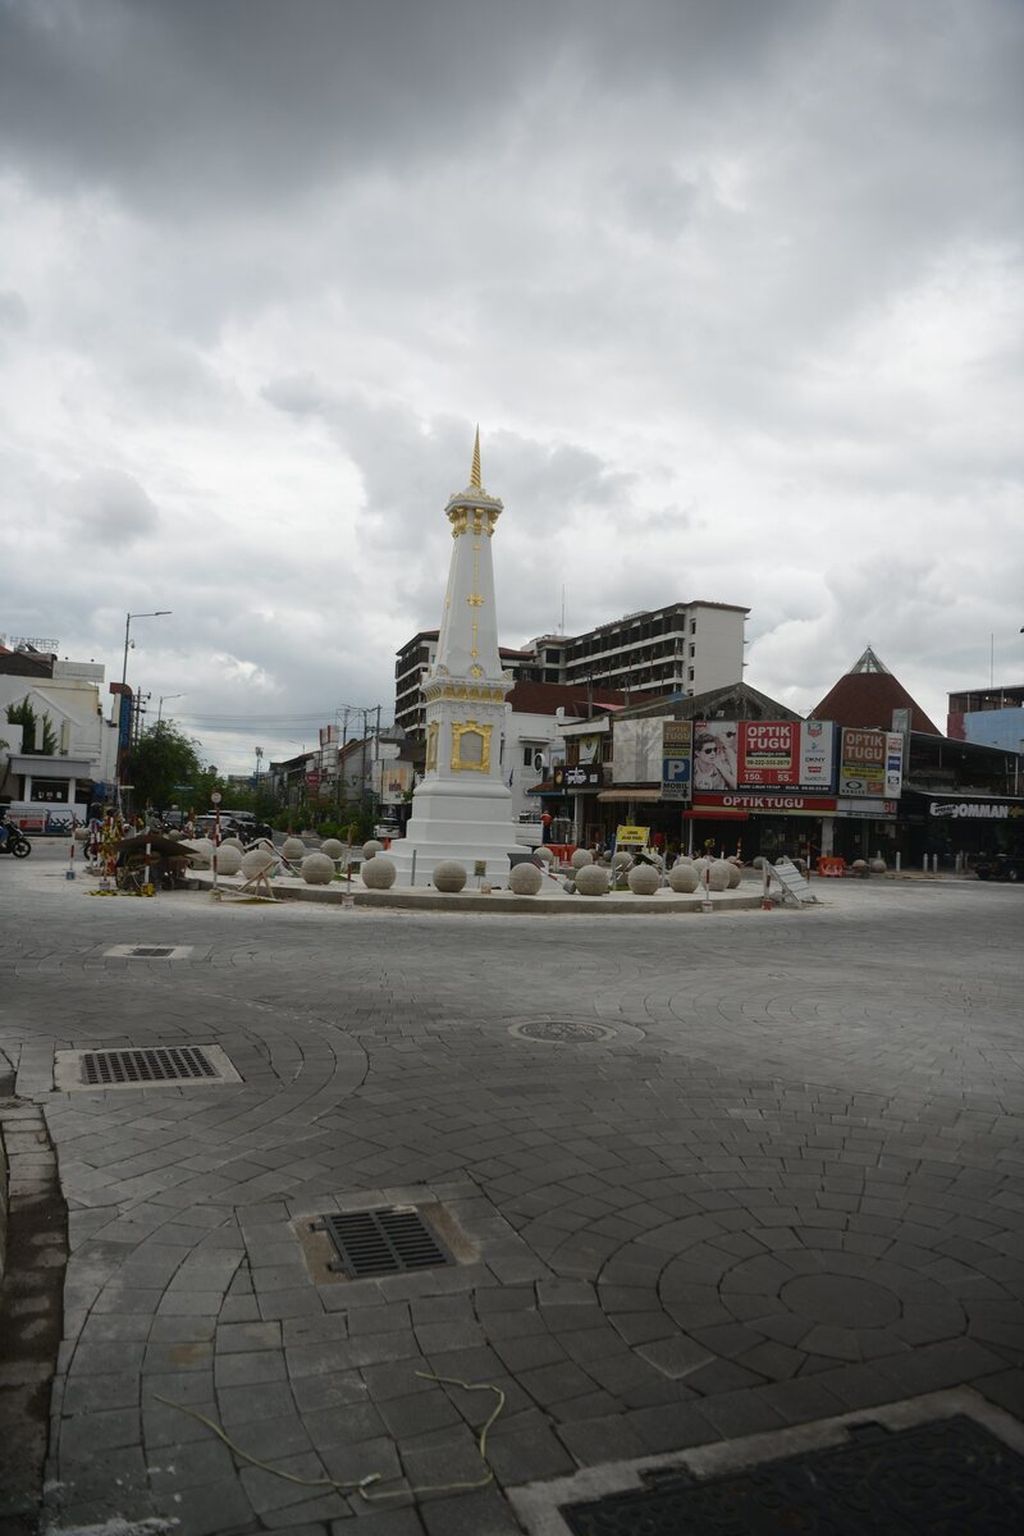 Kendaraan melewati Perempatan Tugu, Yogyakarta, Daerah Istimewa Yogyakarta, Selasa (15/12/2020). Yogyakarta adalah salah satu kota tua dengan jejak Kerajaan Mataram Islam yang kental.